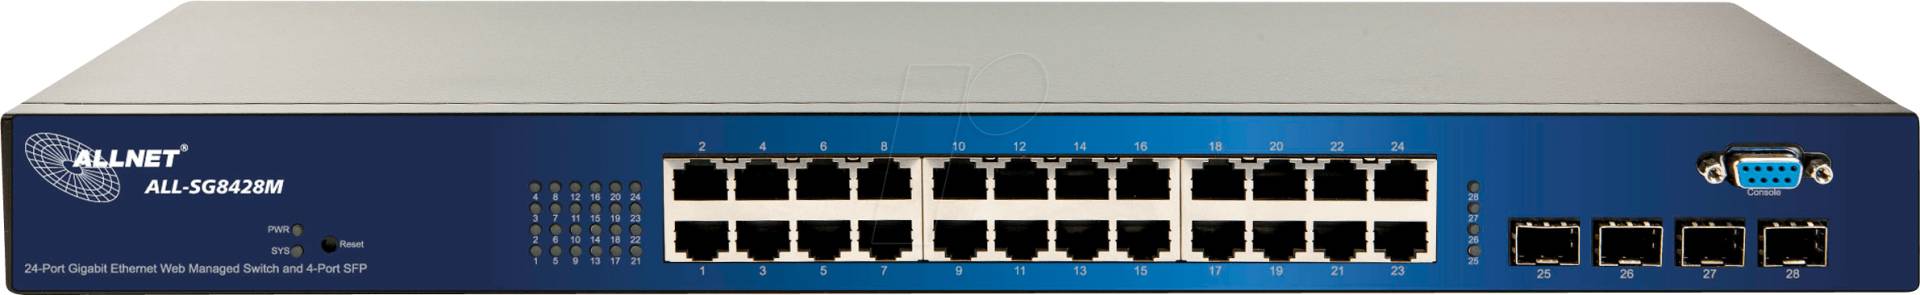 ALLNET ALLSG8428 - Switch, 24-Port, Gigabit Ethernet, 4x SFP von Allnet